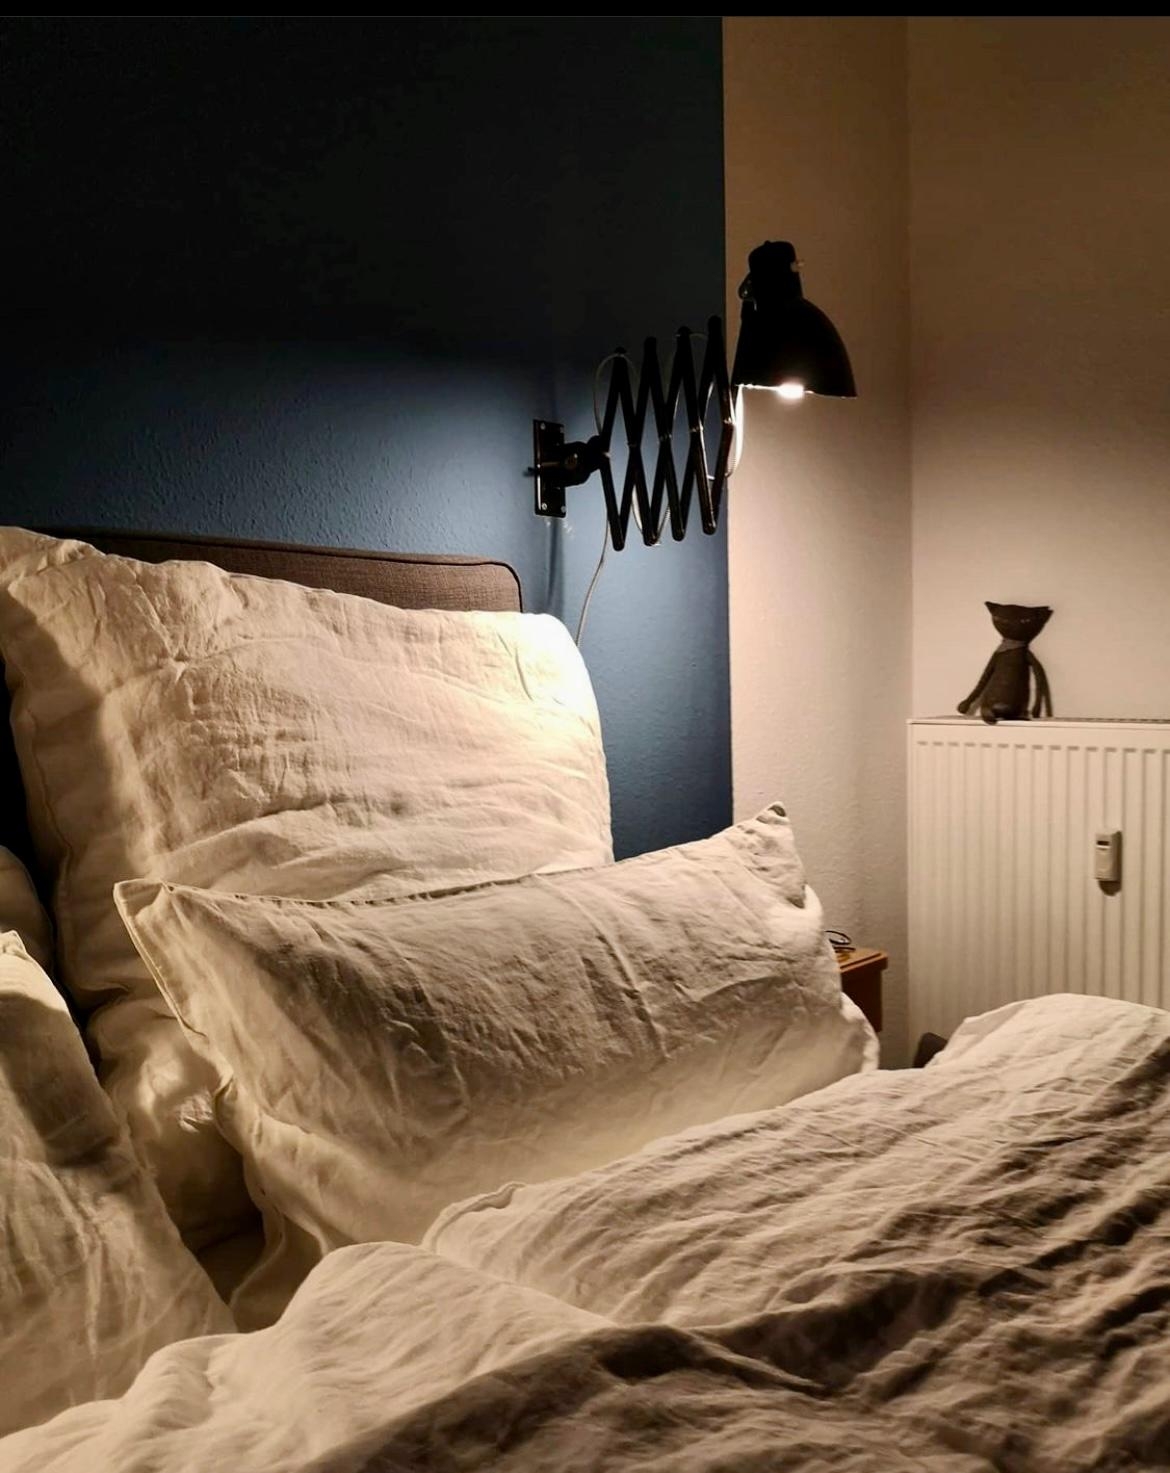 #schlafzimmer #scherenlampe #blau #Leinen #boxspringbett
Herbstzeit ist Kuschelzeit. 